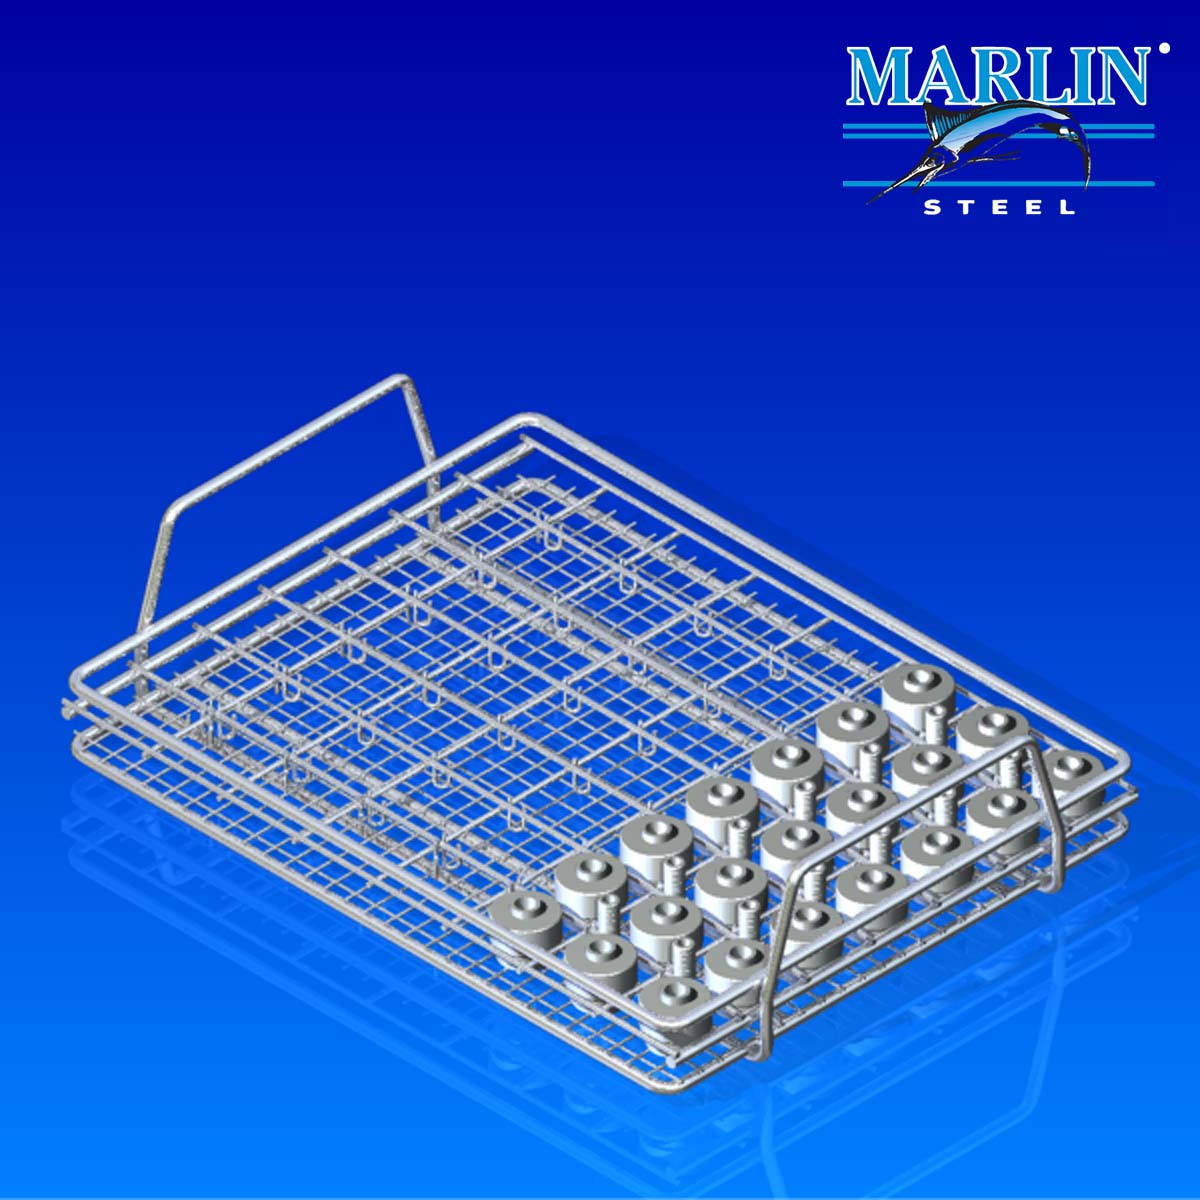 Marlin Steel Wire Material Handling Basket 620001